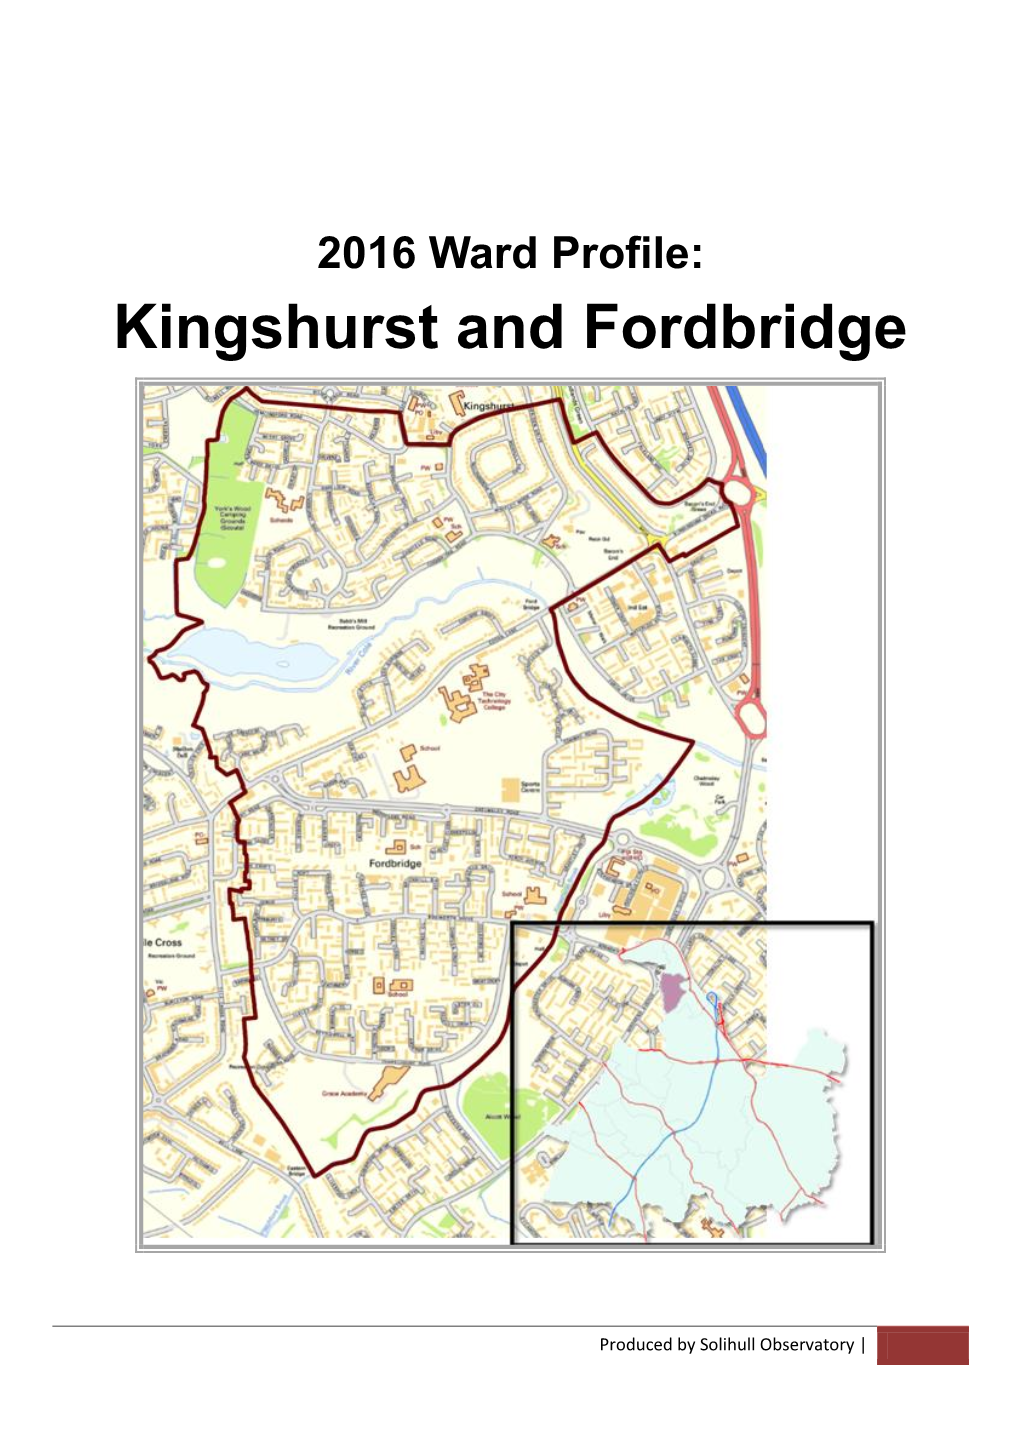 Kingshurst and Fordbridge